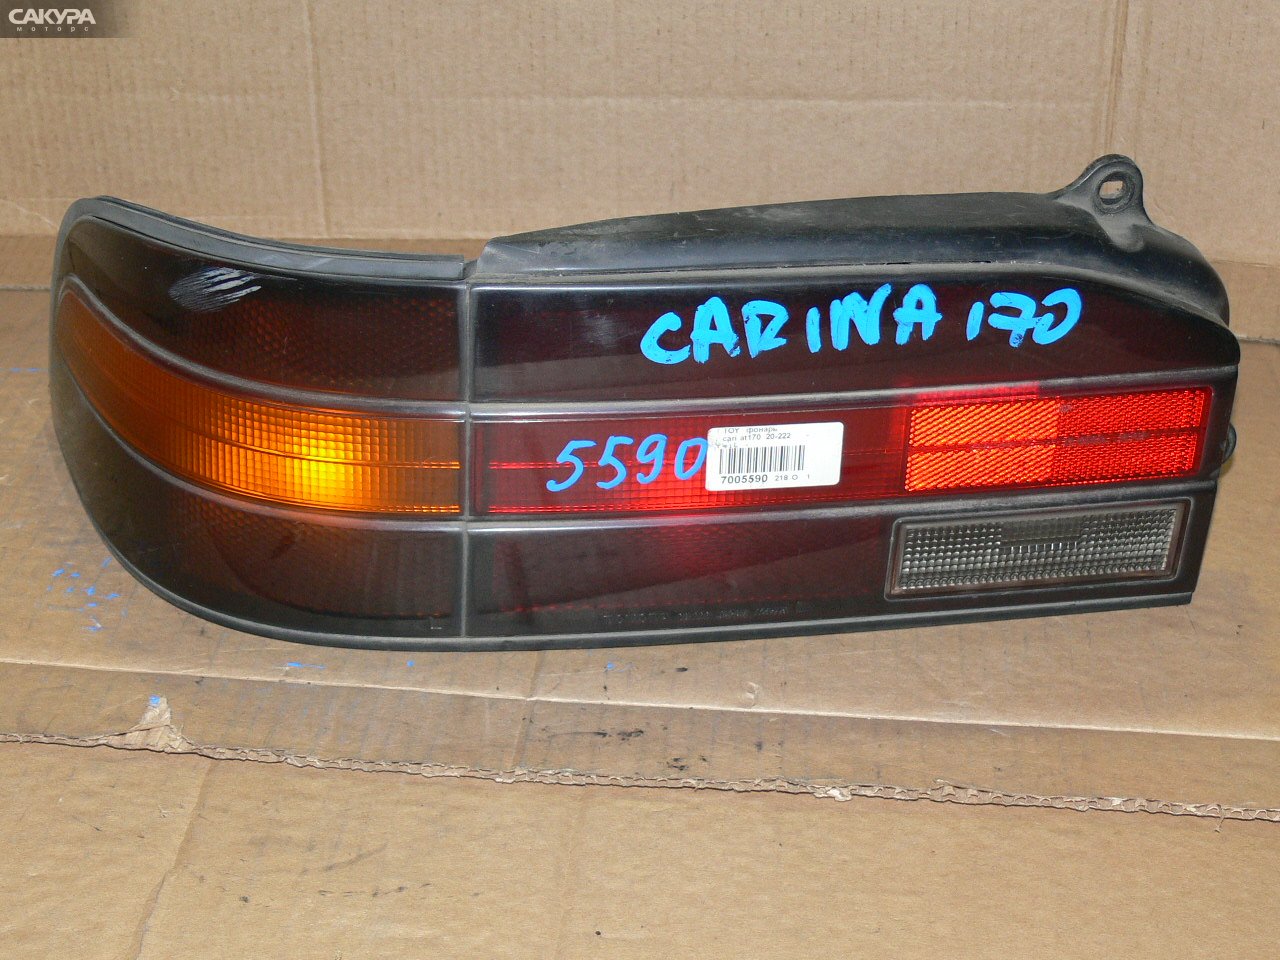 Фонарь стоп-сигнала левый Toyota Carina AT170 20-222: купить в Сакура Иркутск.